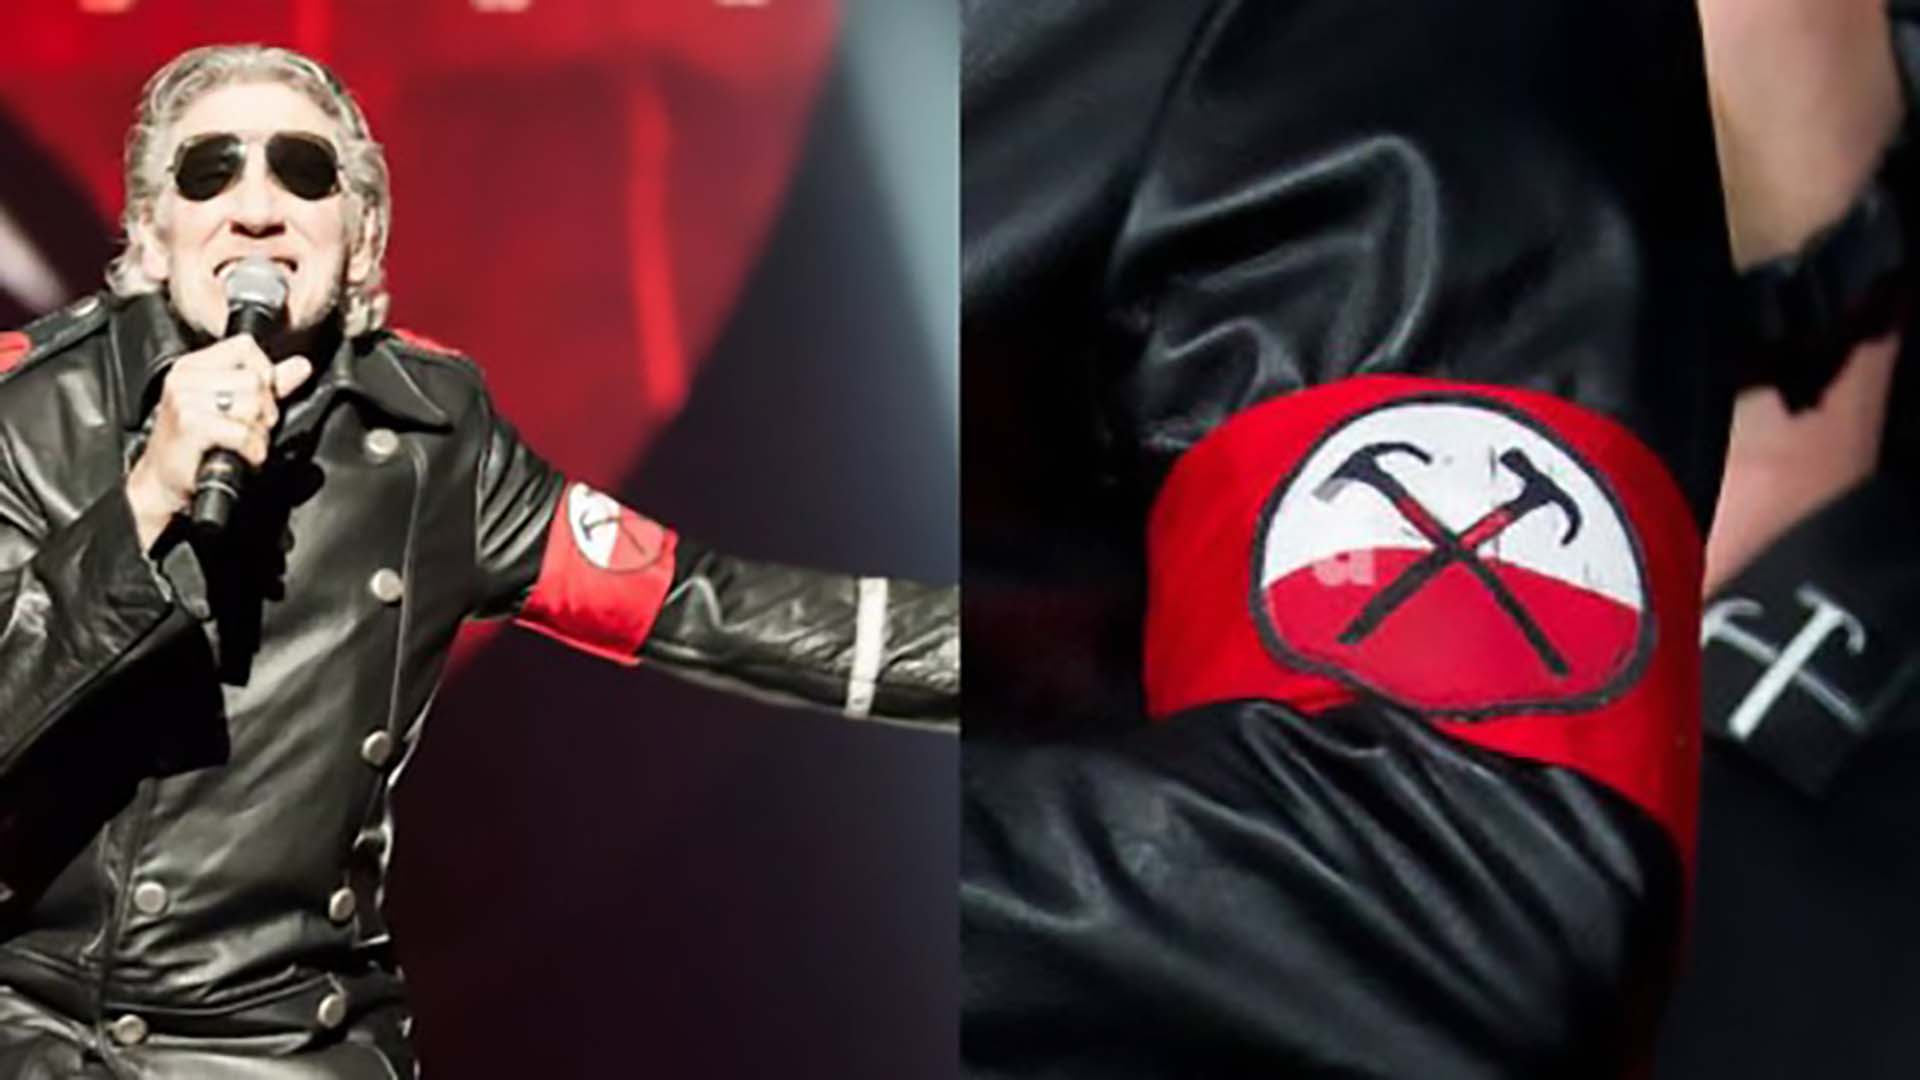 La policía de Berlín investiga a Roger Waters tras lucir un disfraz que glorificaría al nazismo